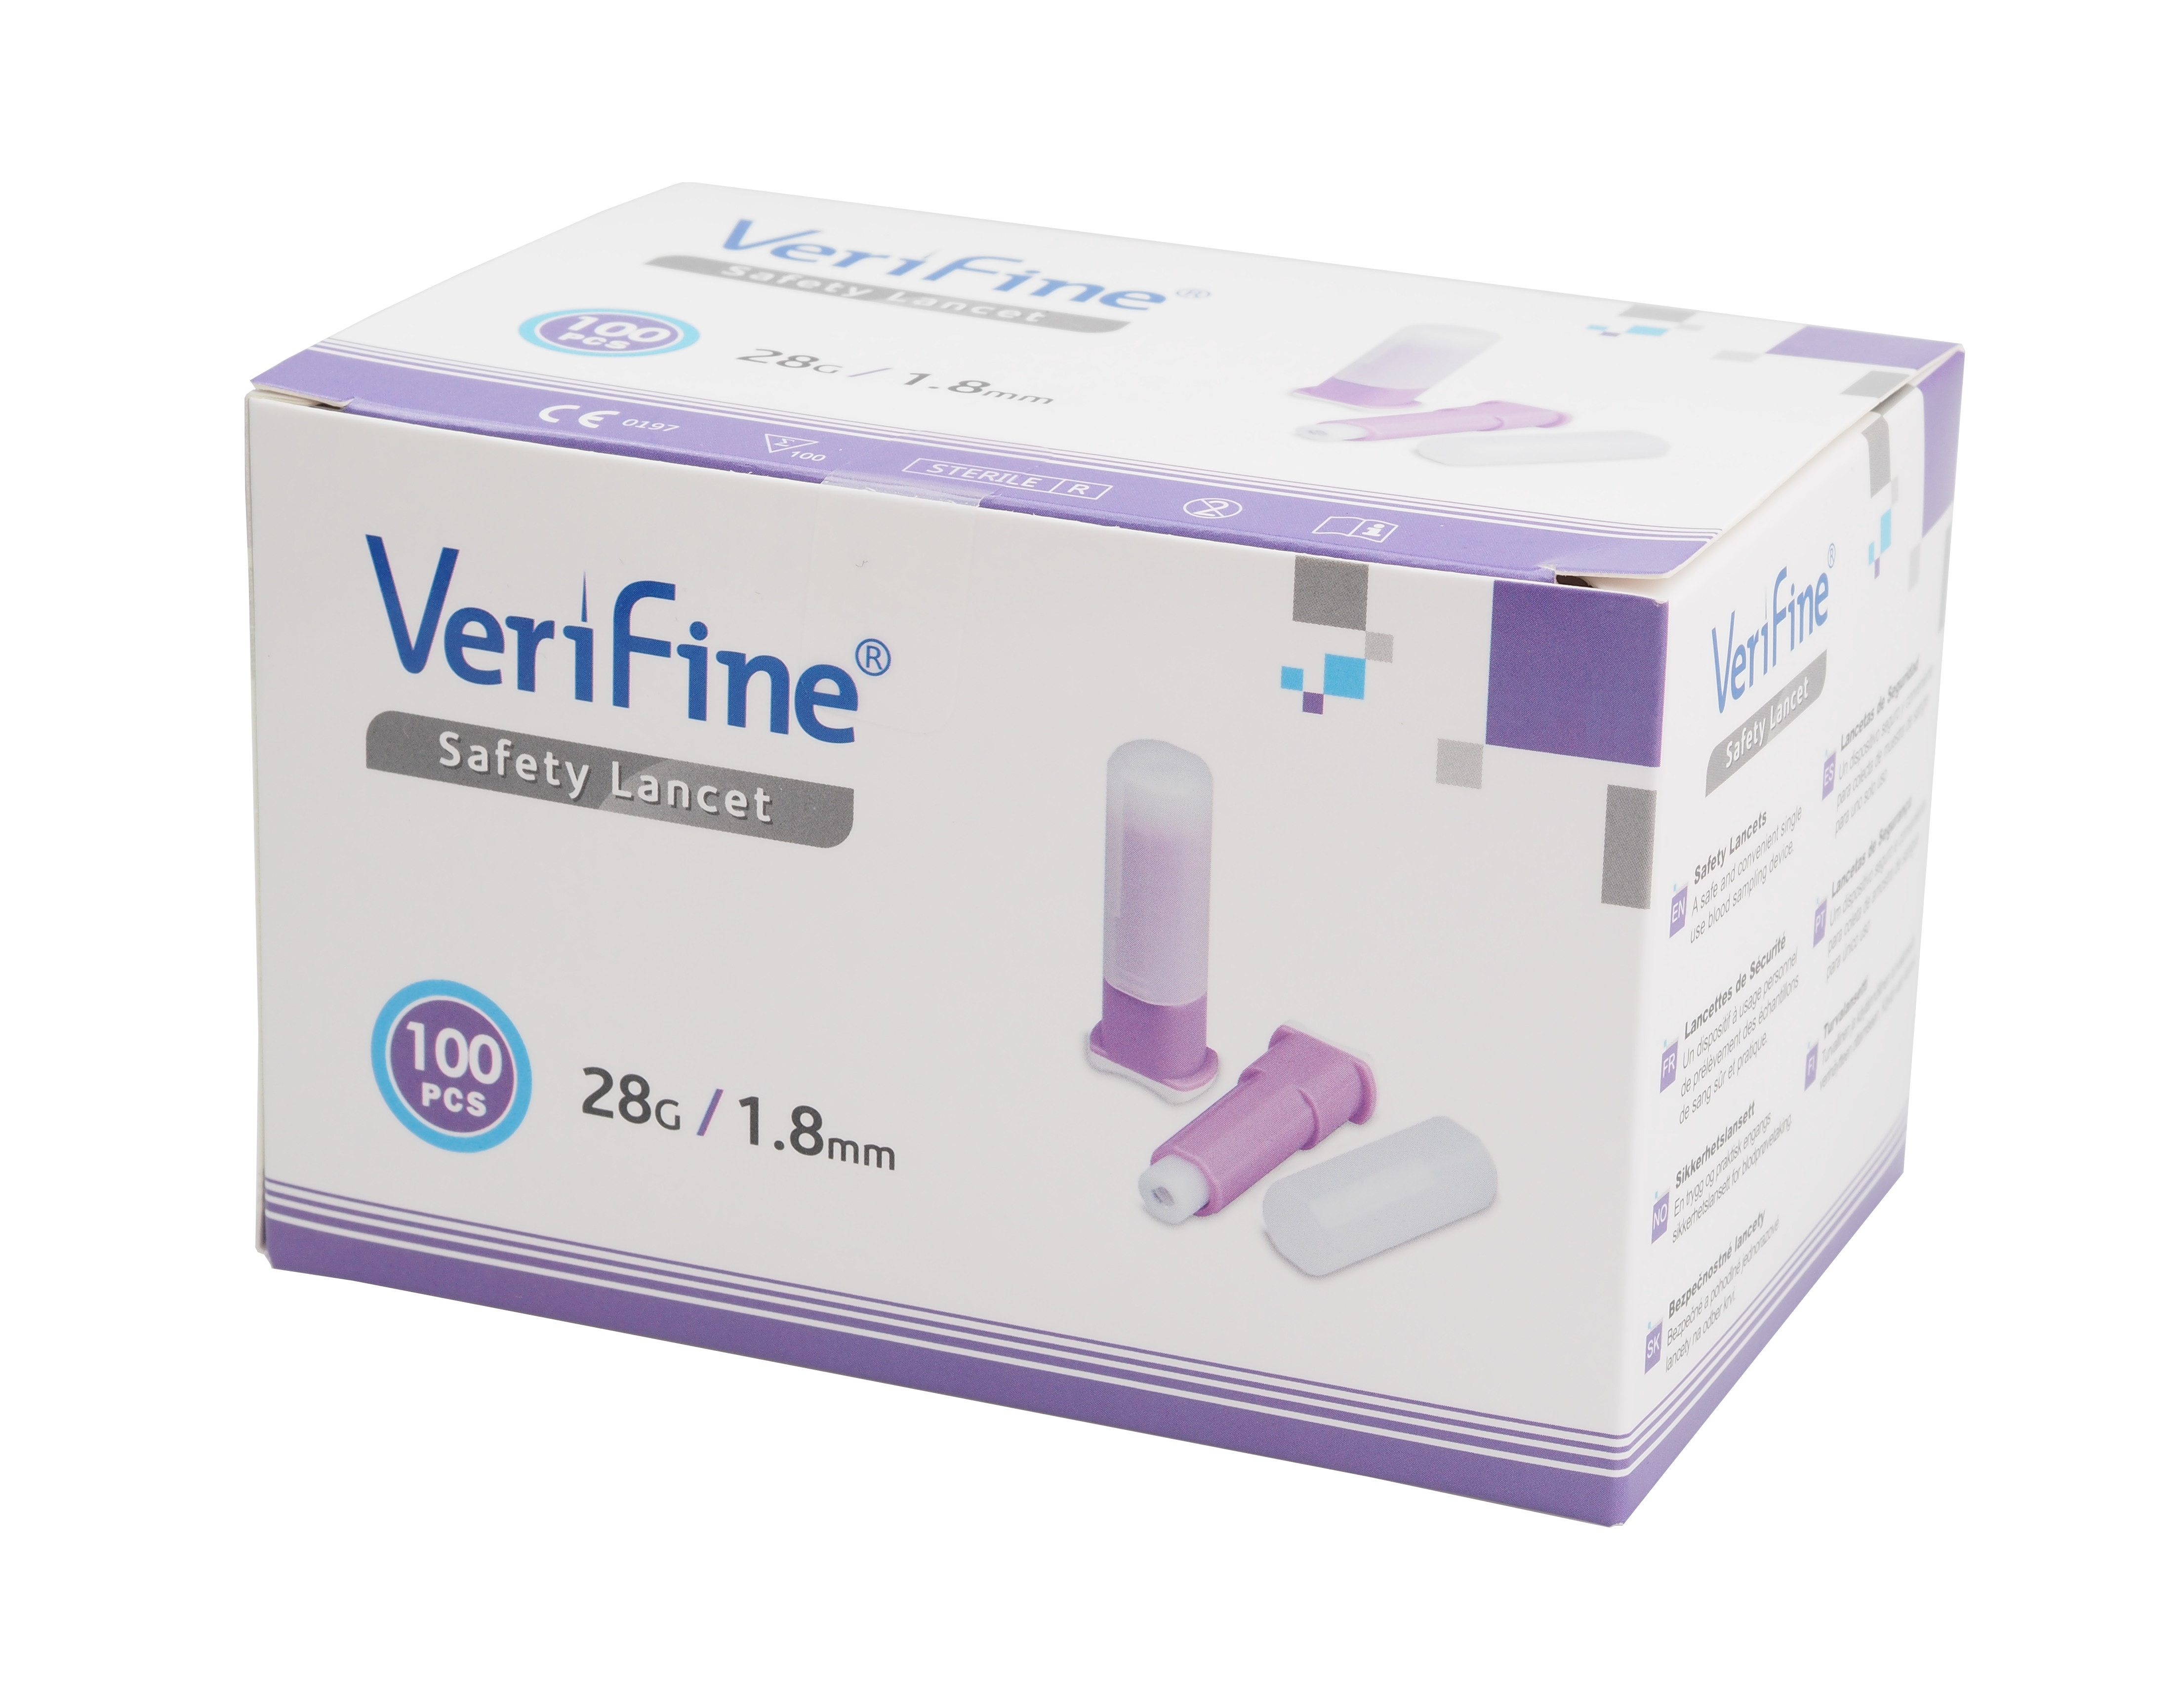 verifine-safety-lancet-28g.jpg